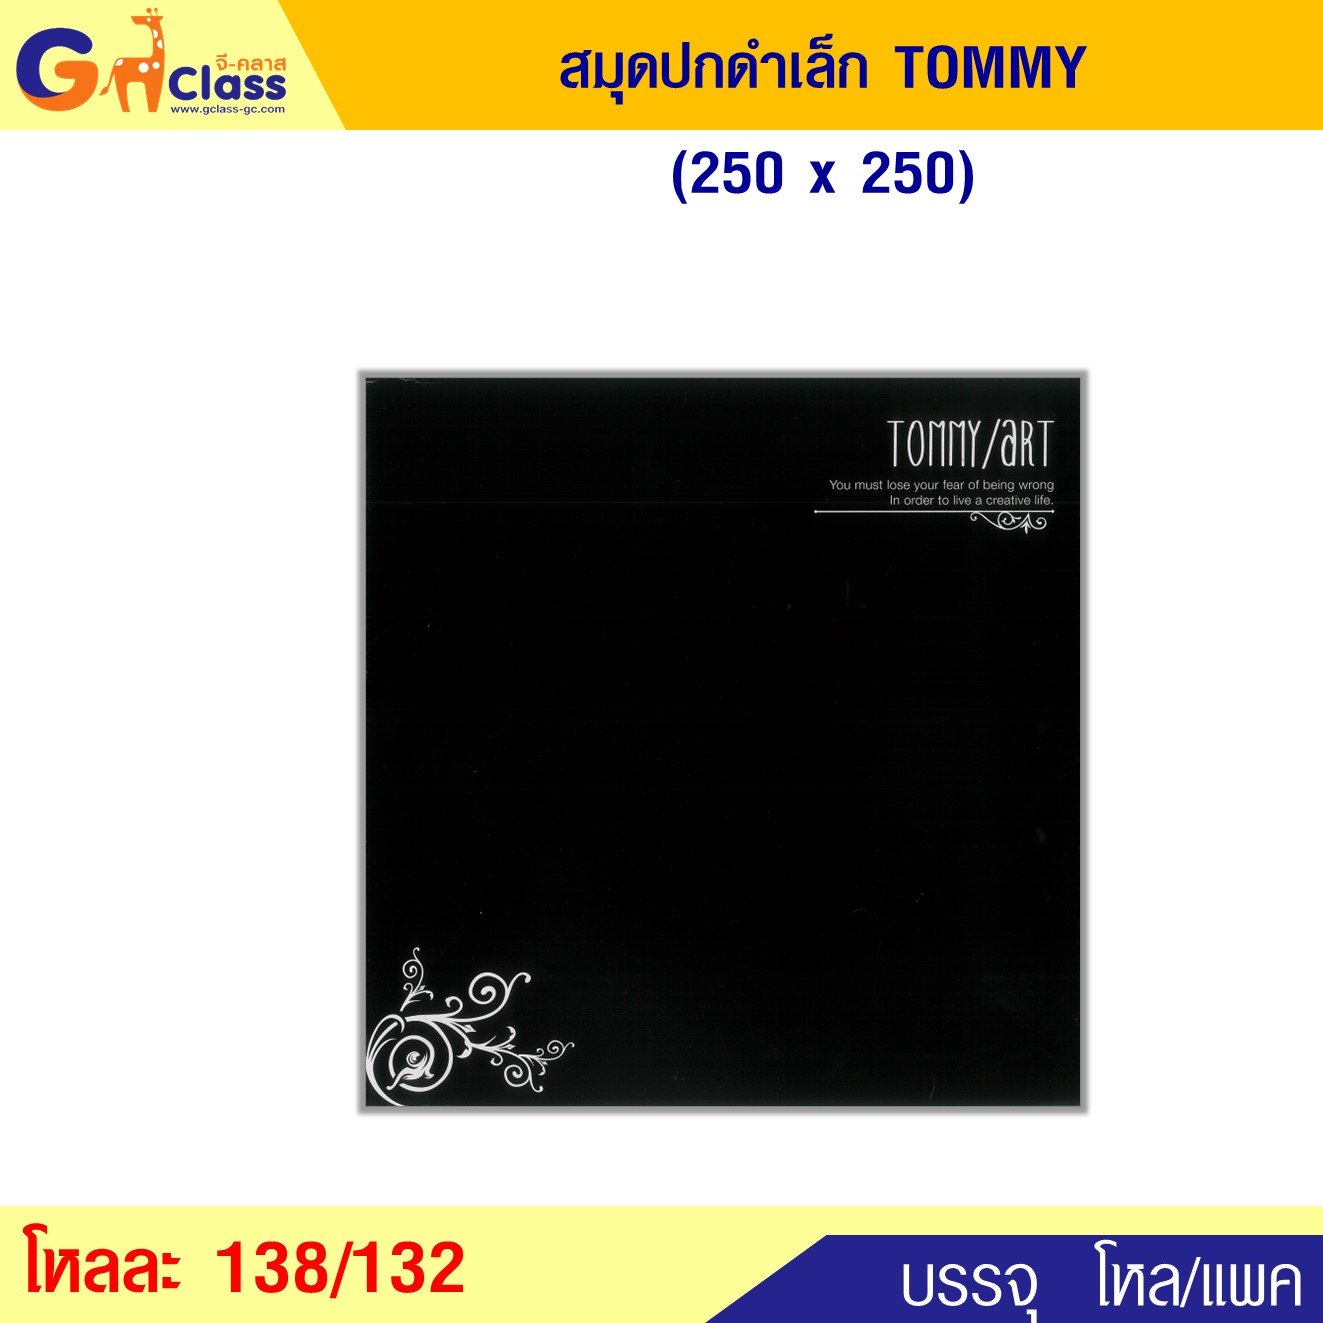 สมุดปกดำเล็ก TOMMY (250x250)